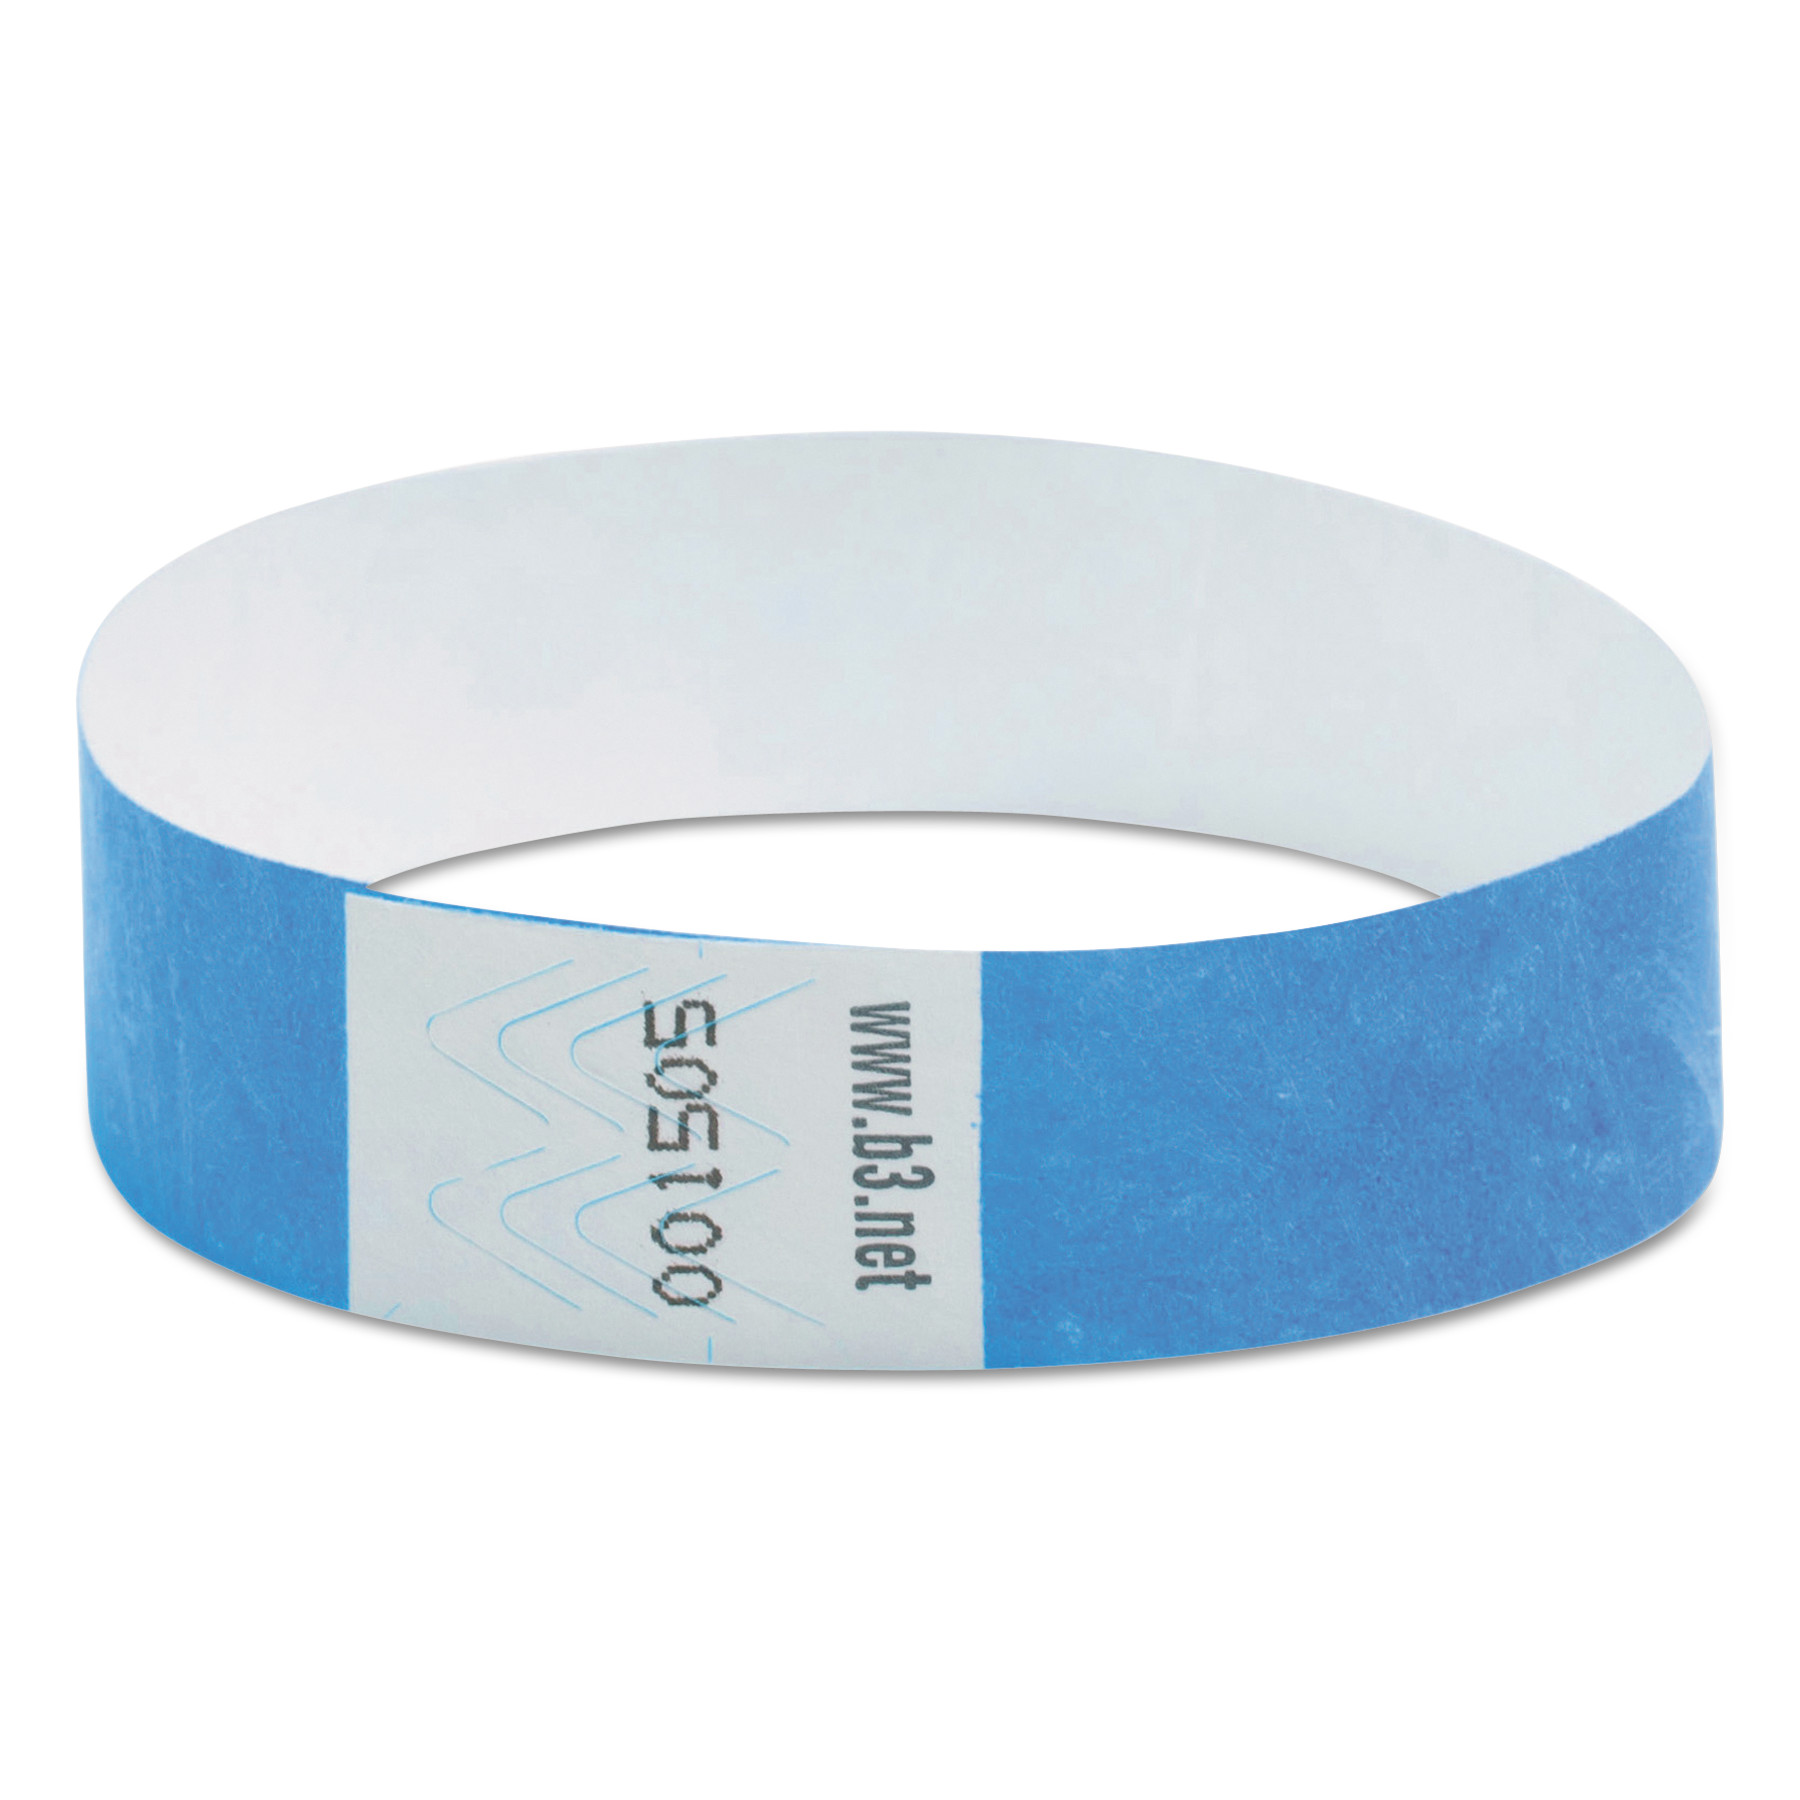  SICURIX 85030 Security Wristbands, 0.75 x 10, Blue, 100/Pack (BAU85030) 